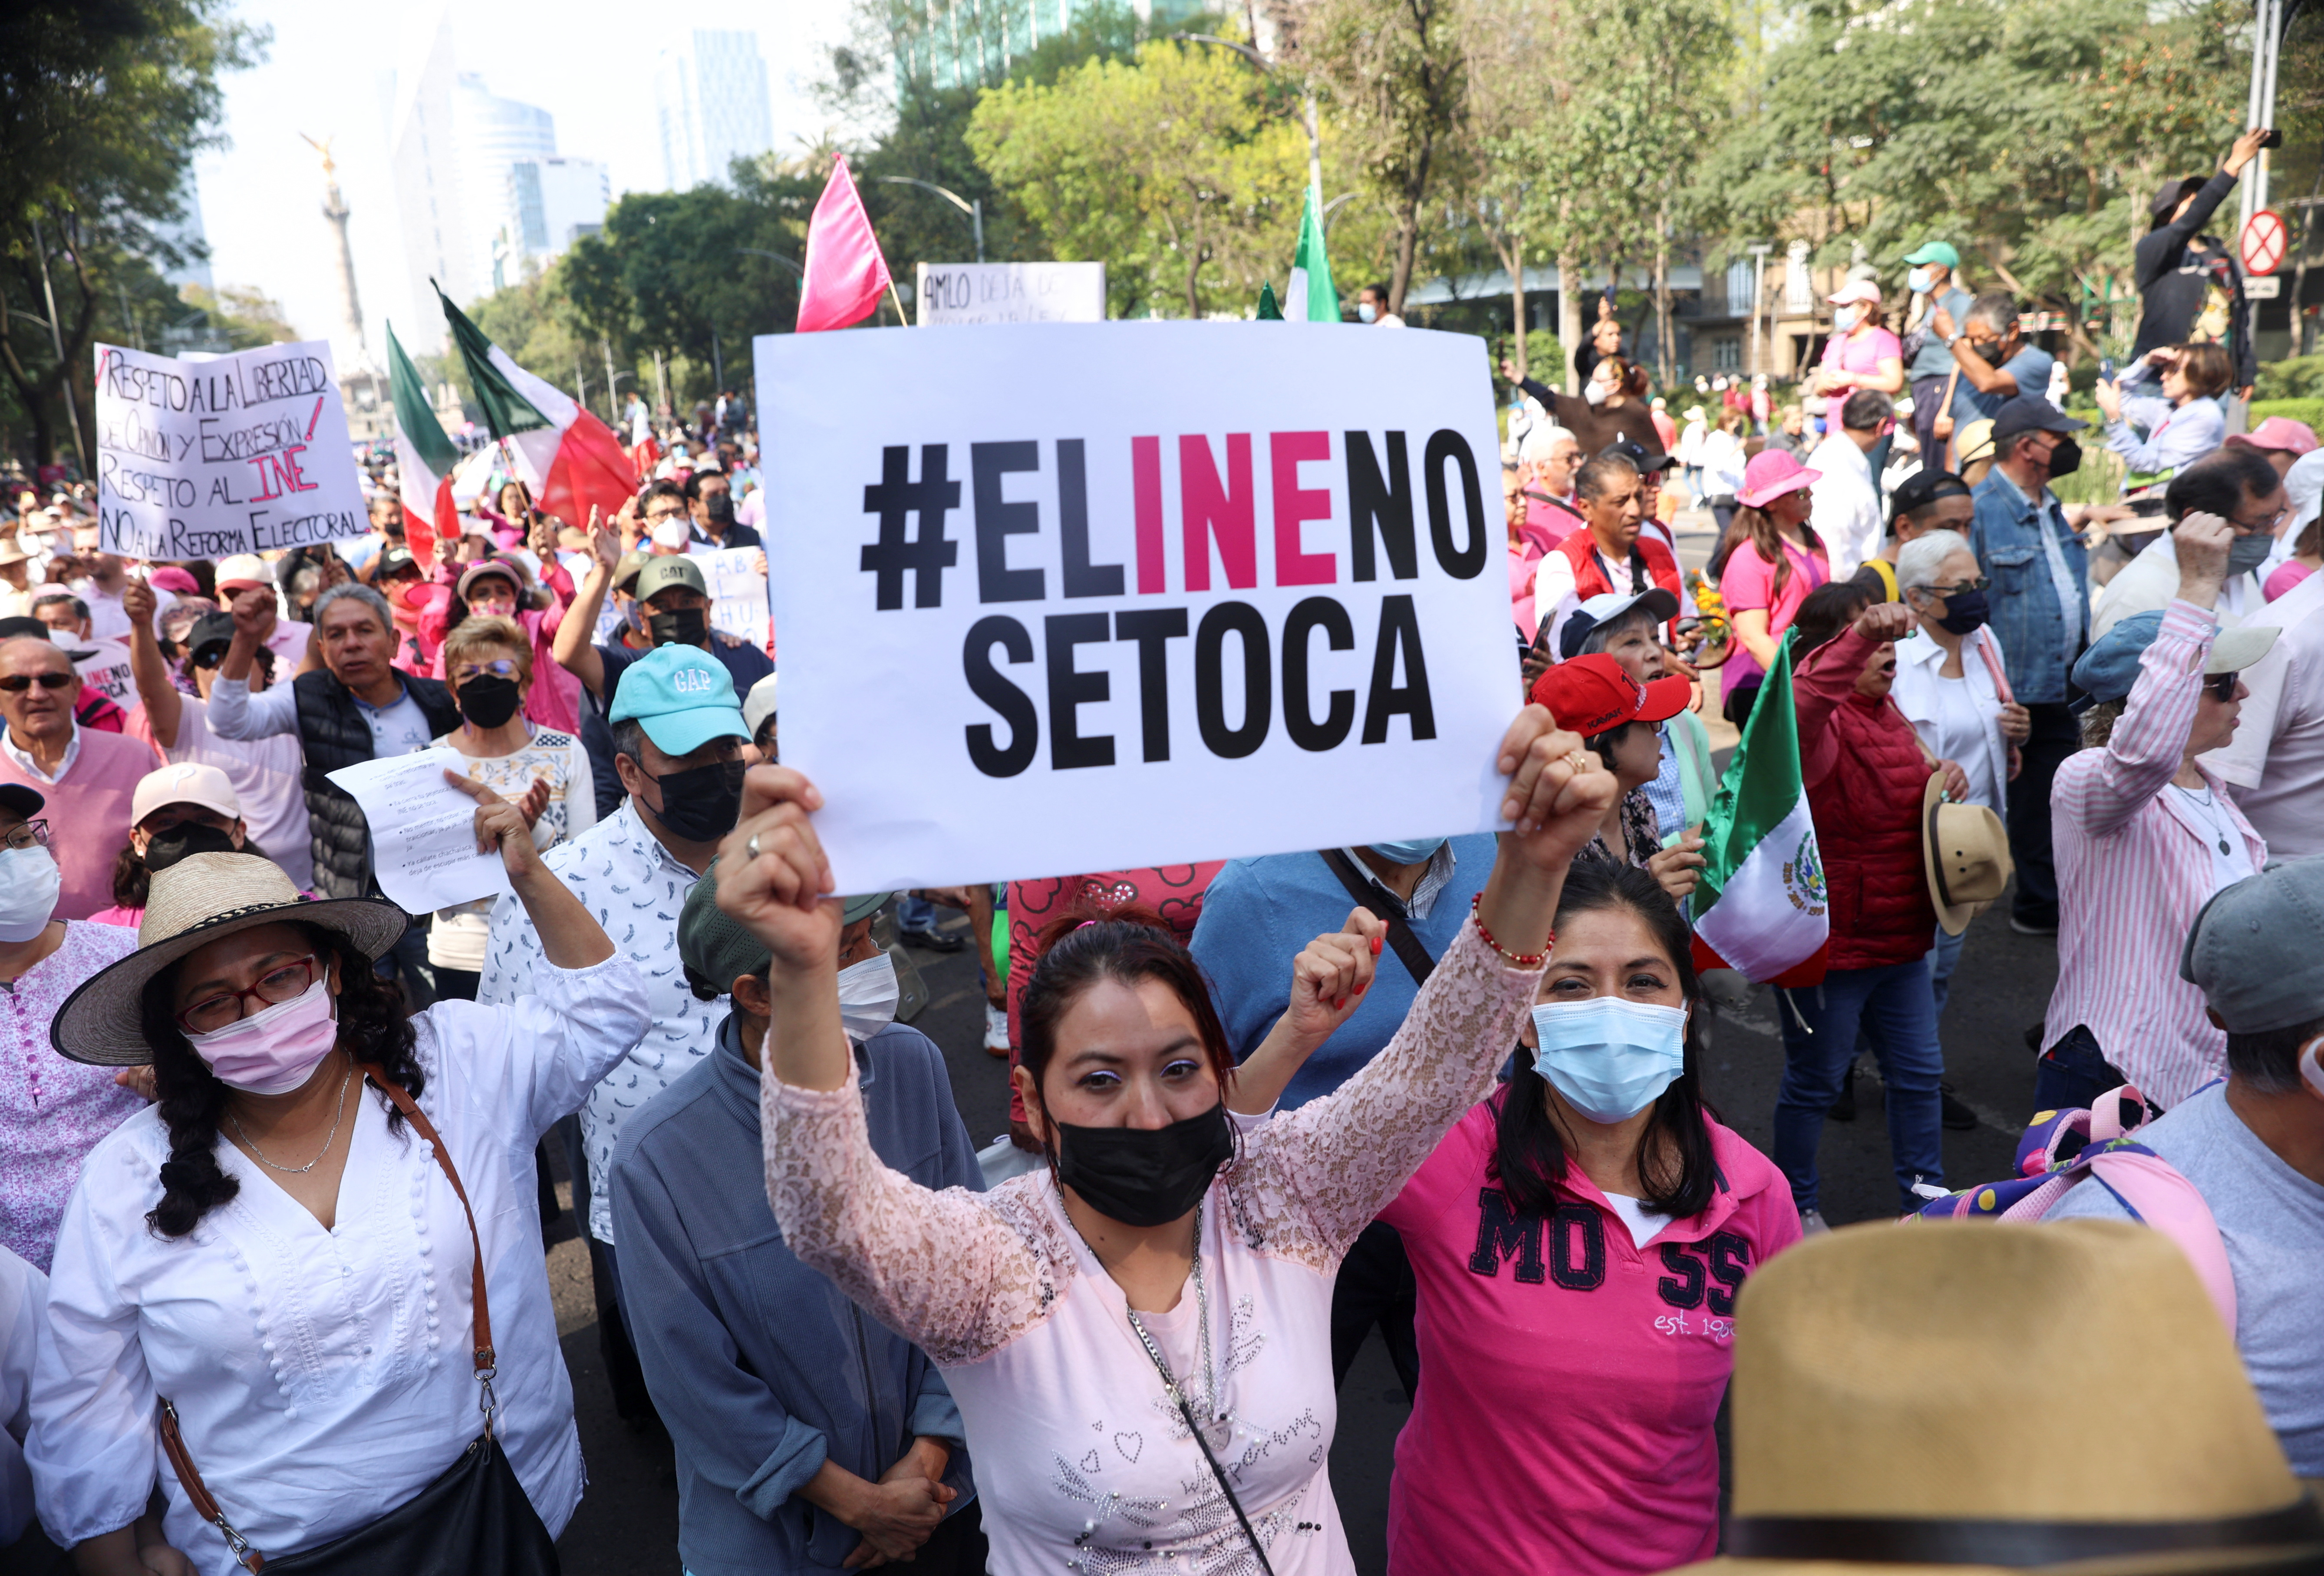 La marcha en defensa del INE fue encabezada por figuras de la oposición como los líderes de los partidos PAN, PRI y PRD REUTERS/Luis Cortes